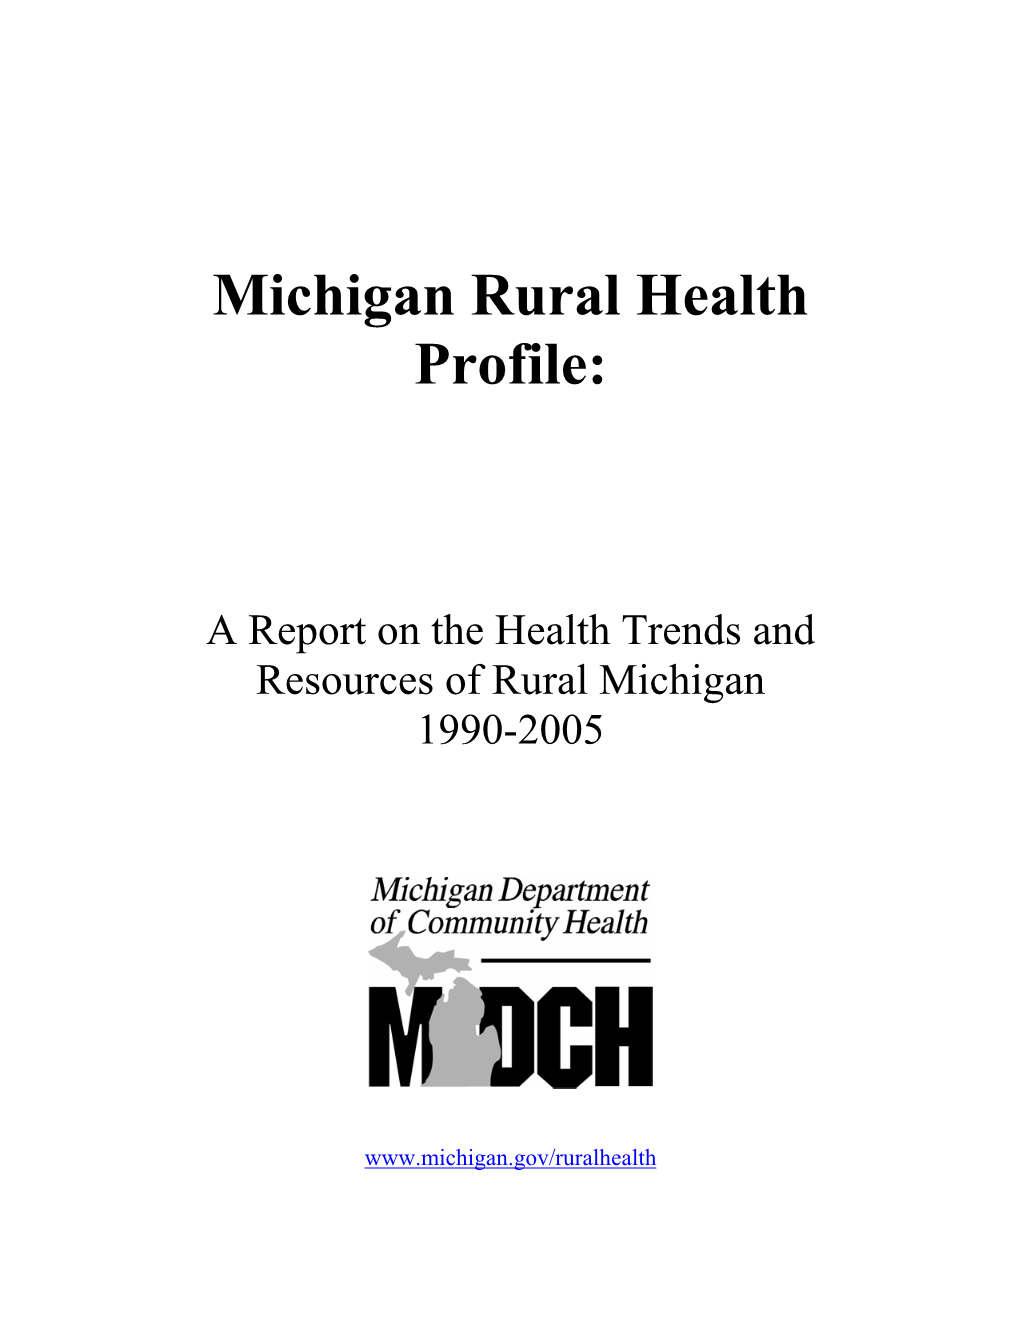 Michigan's Rural Health Profile